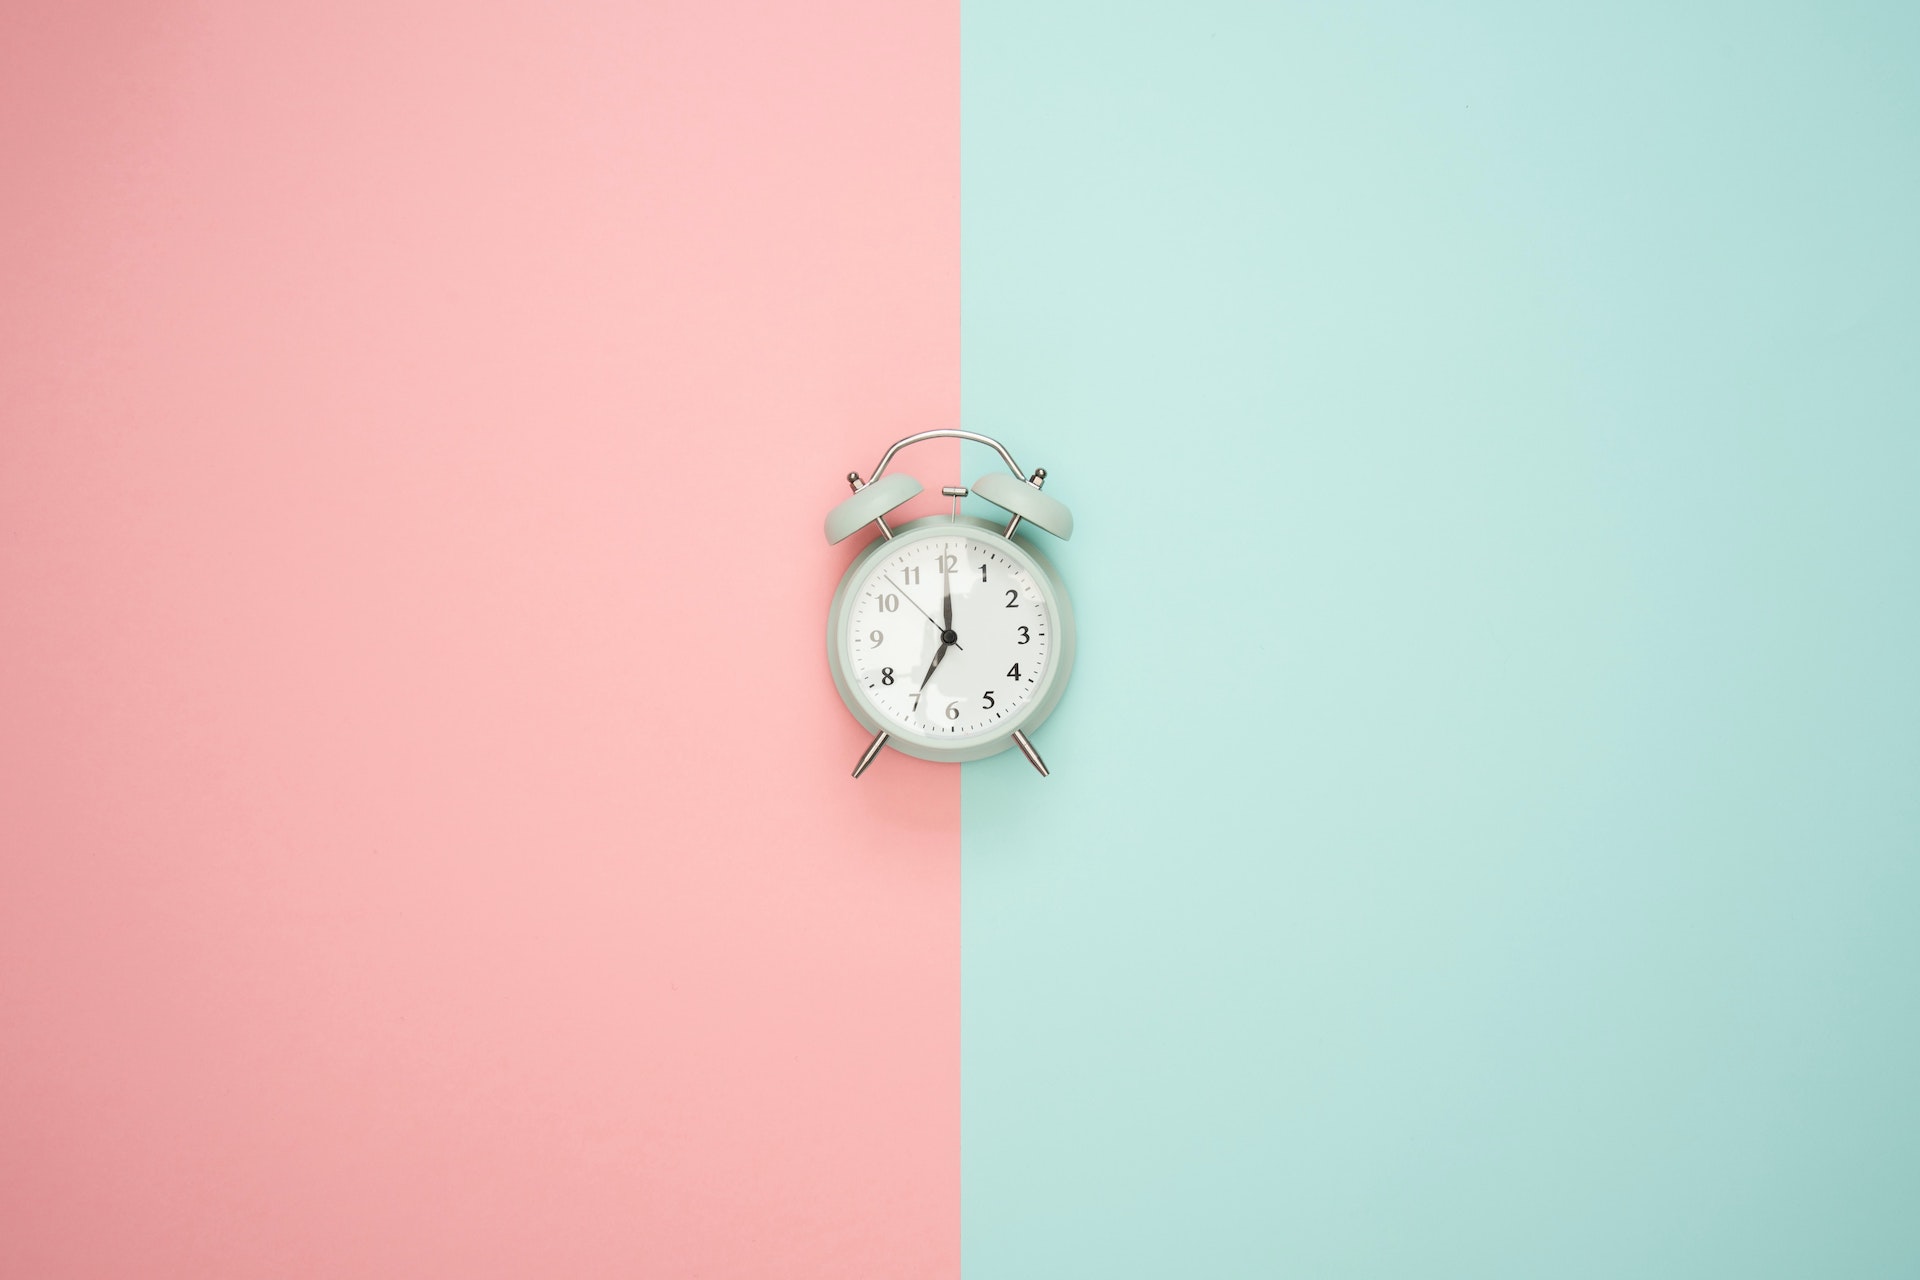 Eine Uhr auf einem pinken und blauem Hintergrund.